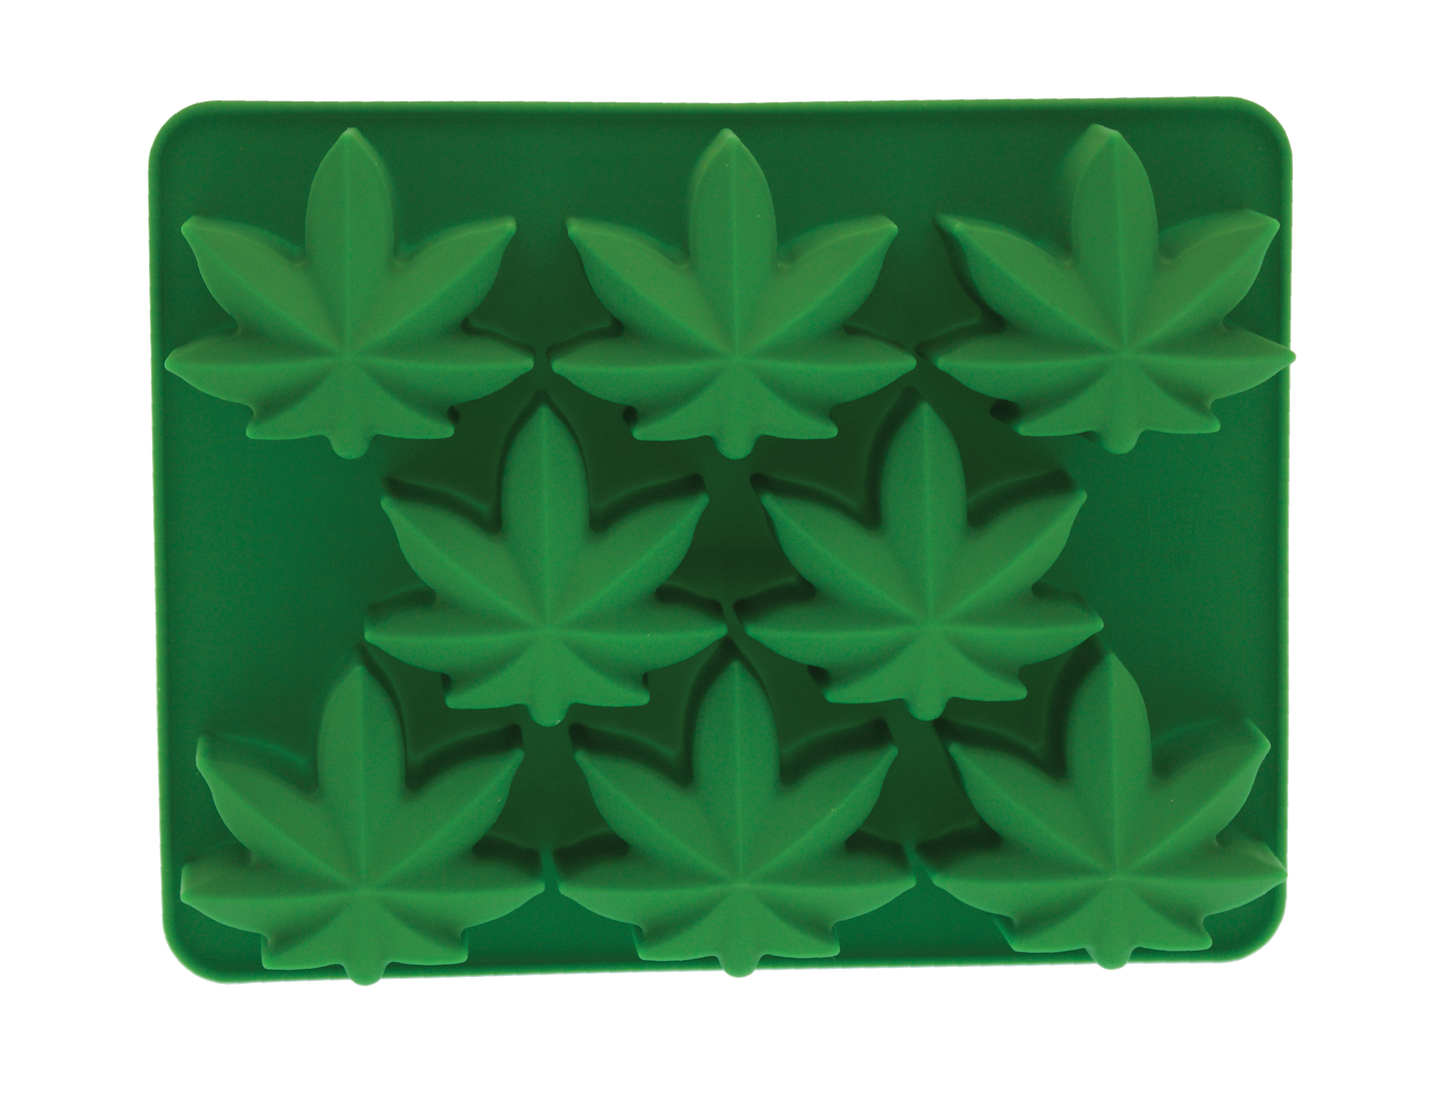 Marijuana Leaf Ice Cube Mold